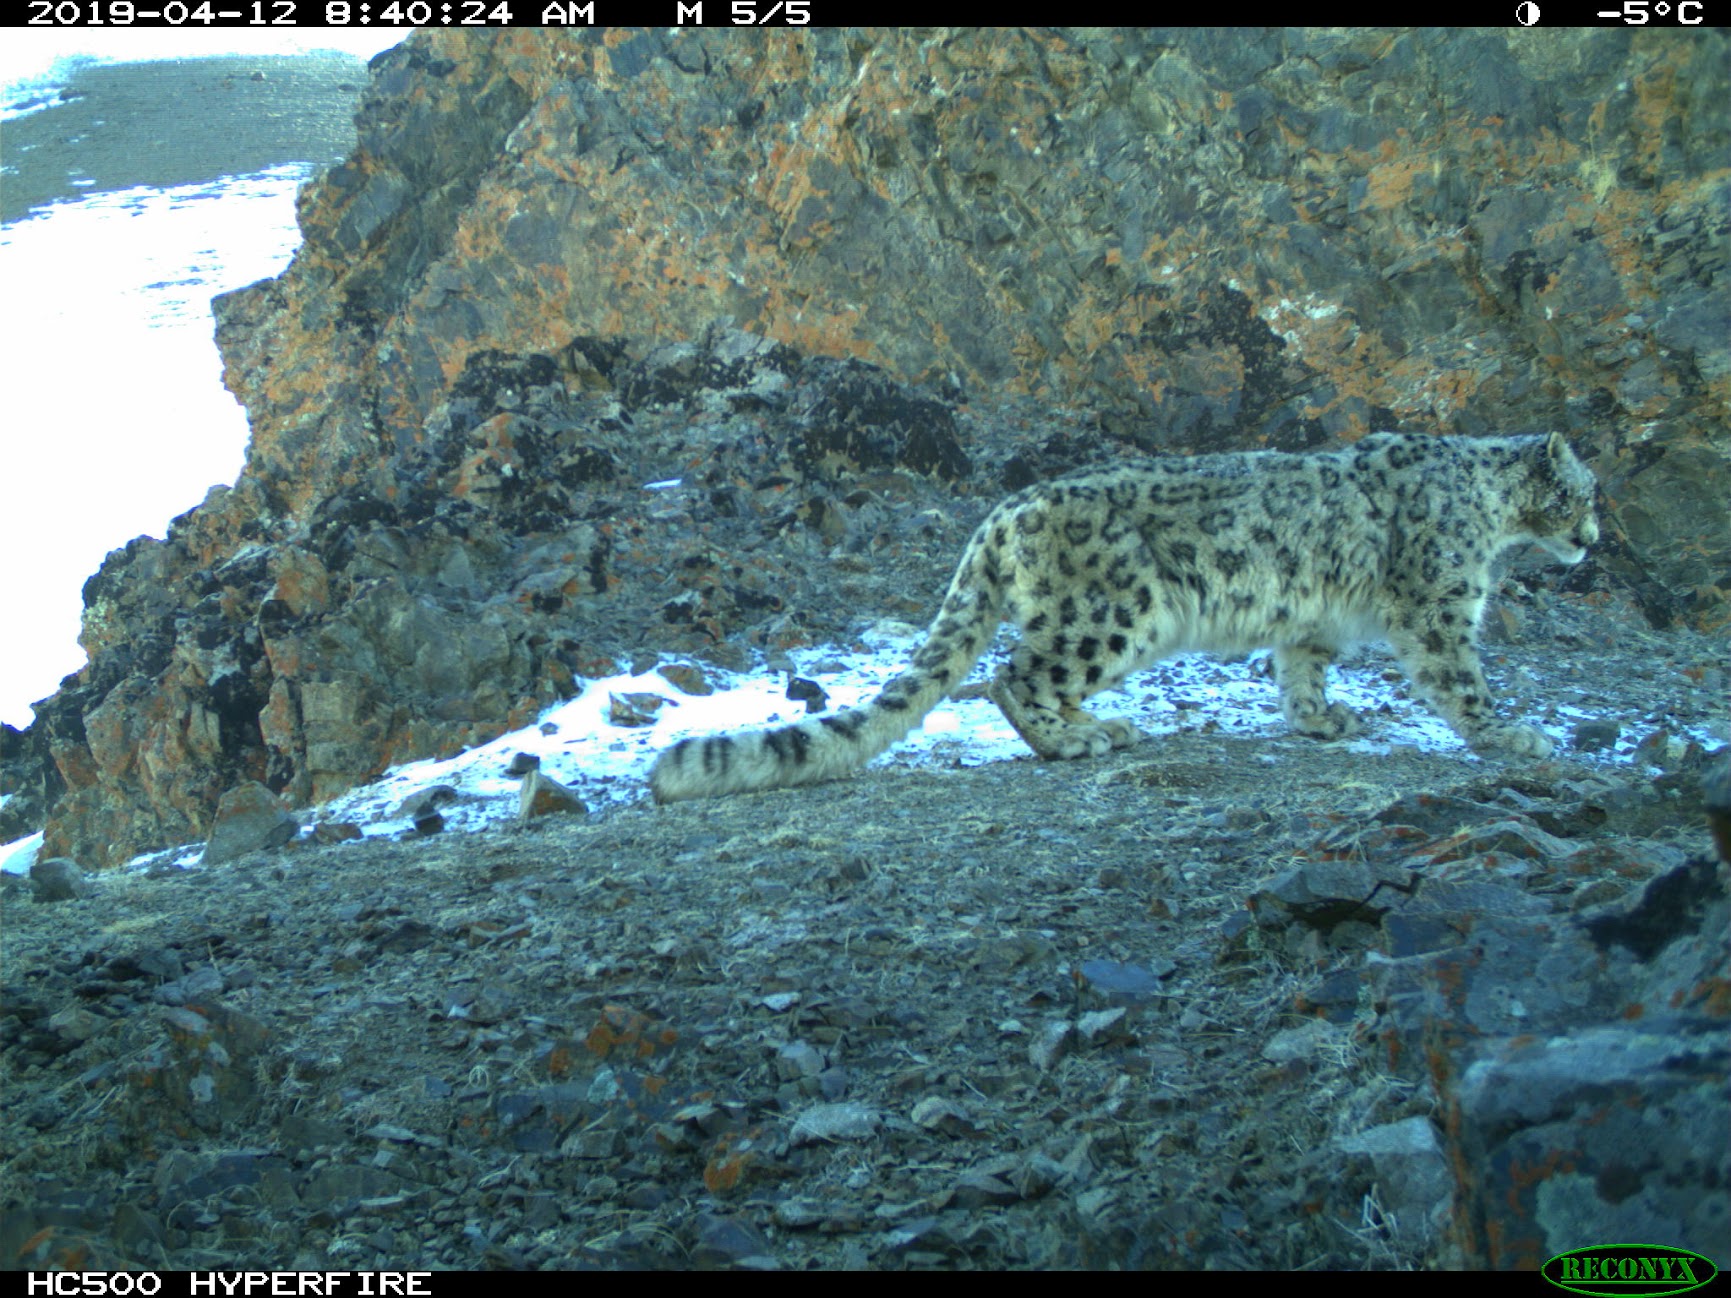 immagine-del-leopardo-delle-nevi-scattata-dalla-fototrappola-francesco-rovero-3.jpg